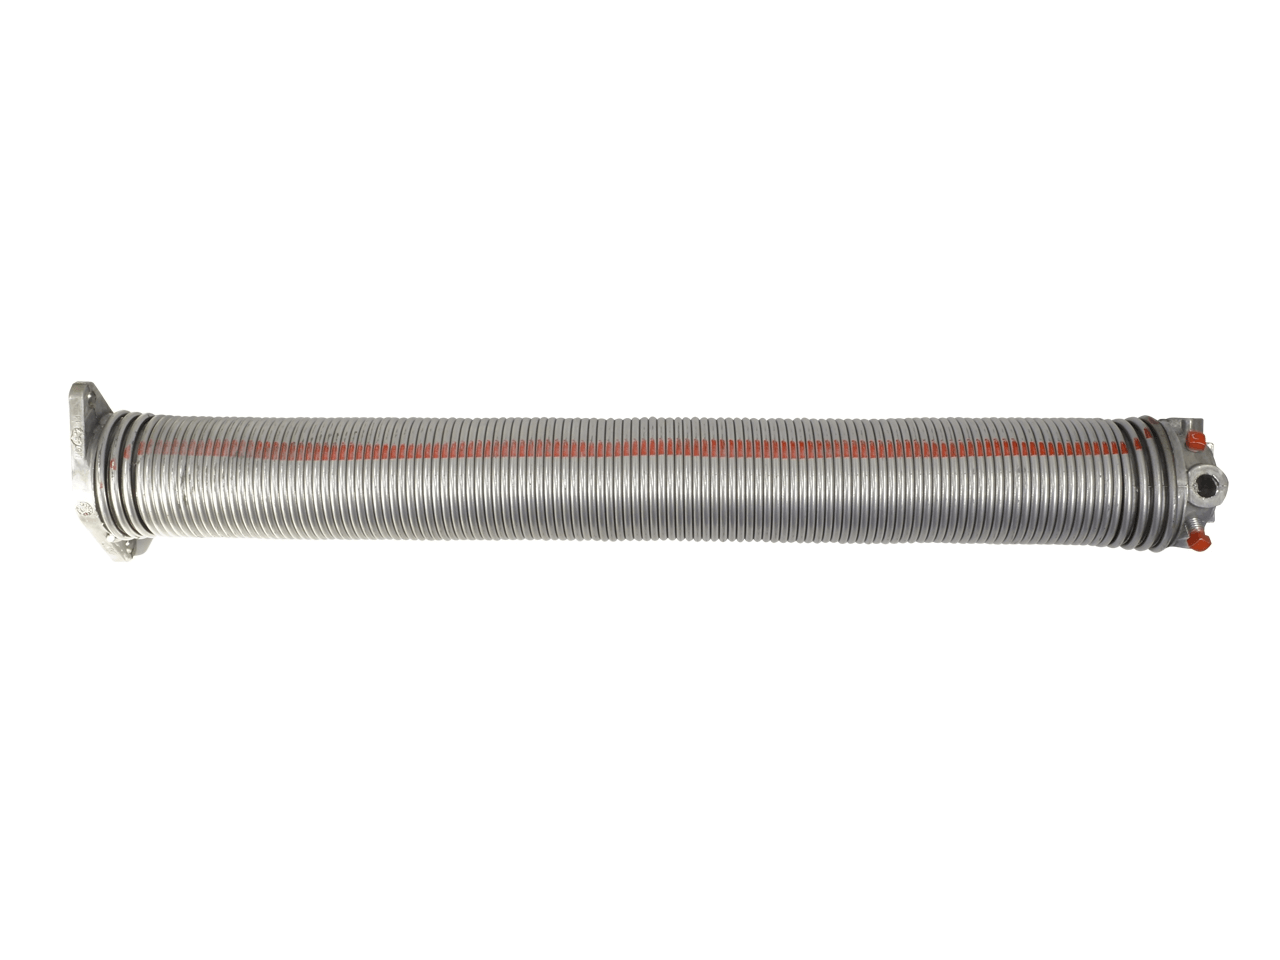 Torfeder, Innendurchmesser 152 mm, Drahtstärke 8 mm, Windung Links, mit Köpfen für Welle 31,75mm